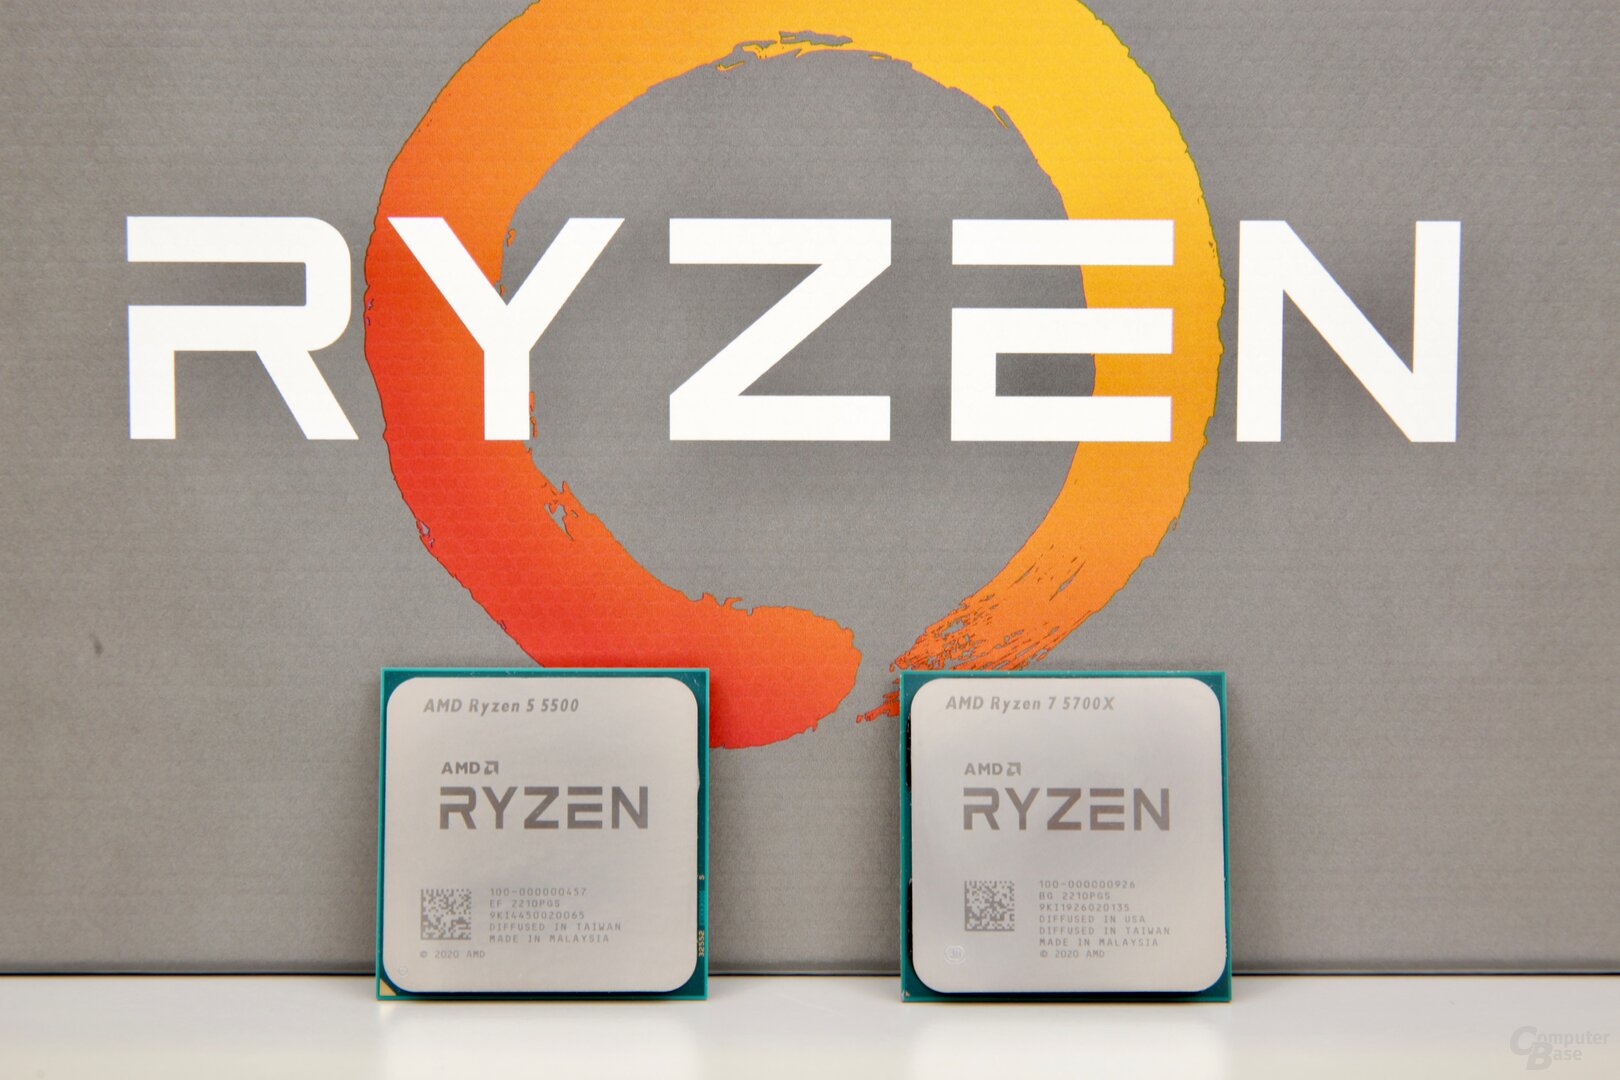 AMD Ryzen 5 5500 und AMD Ryzen 7 5700X im Test